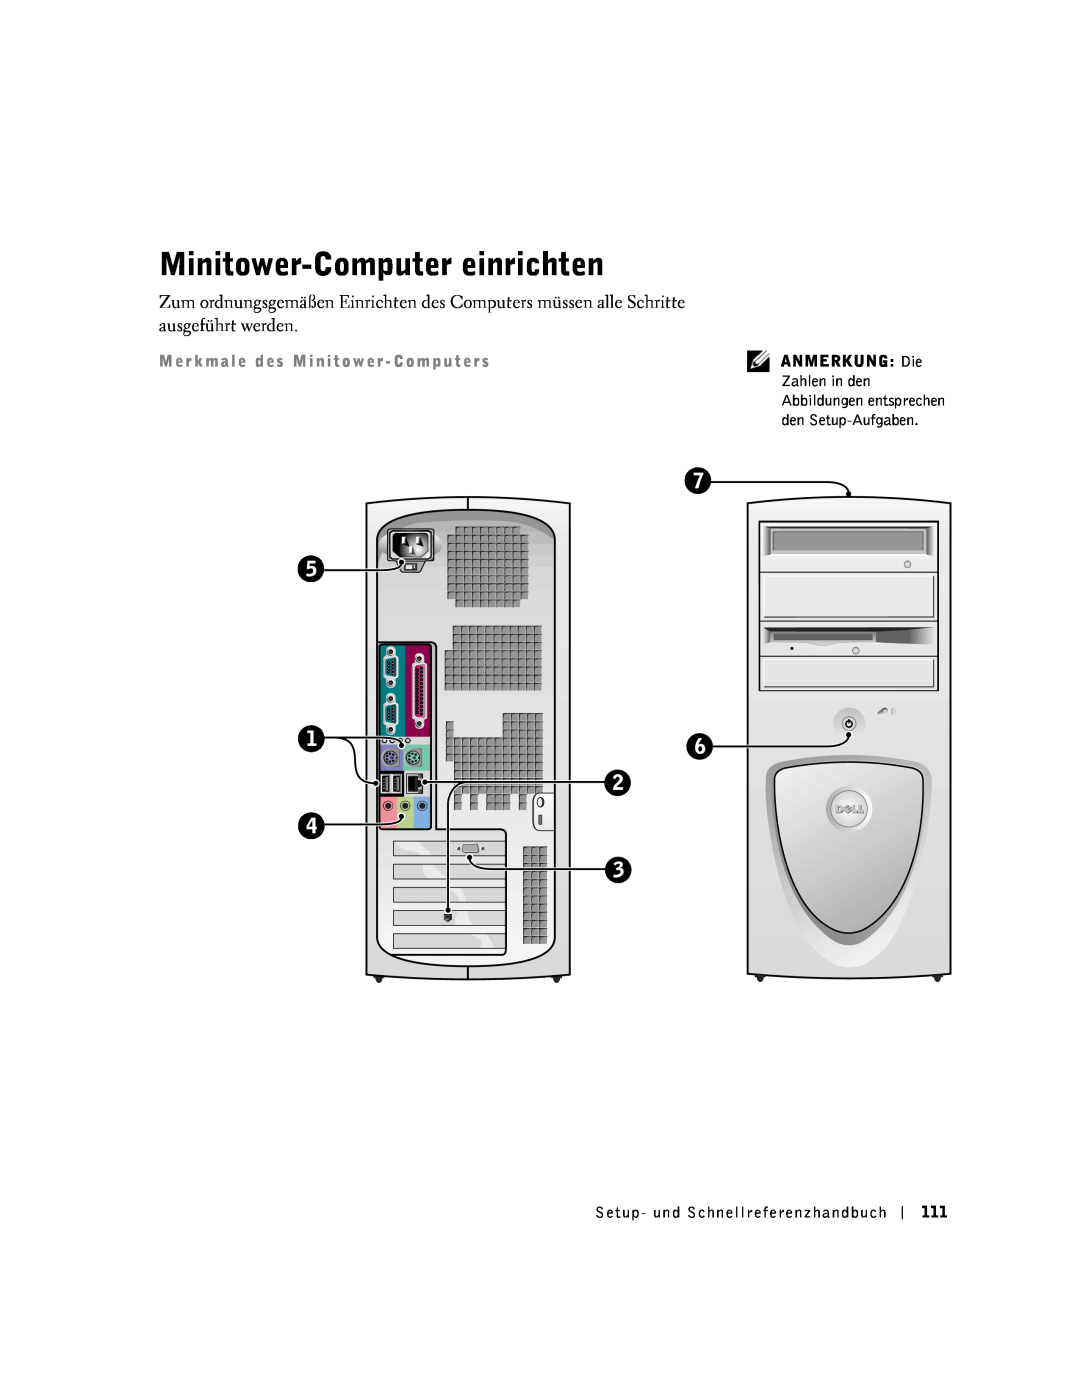 Dell 1G155 manual Minitower-Computer einrichten, M e r k m a l e d e s M i n i t o w e r - C o m p u t e r s 